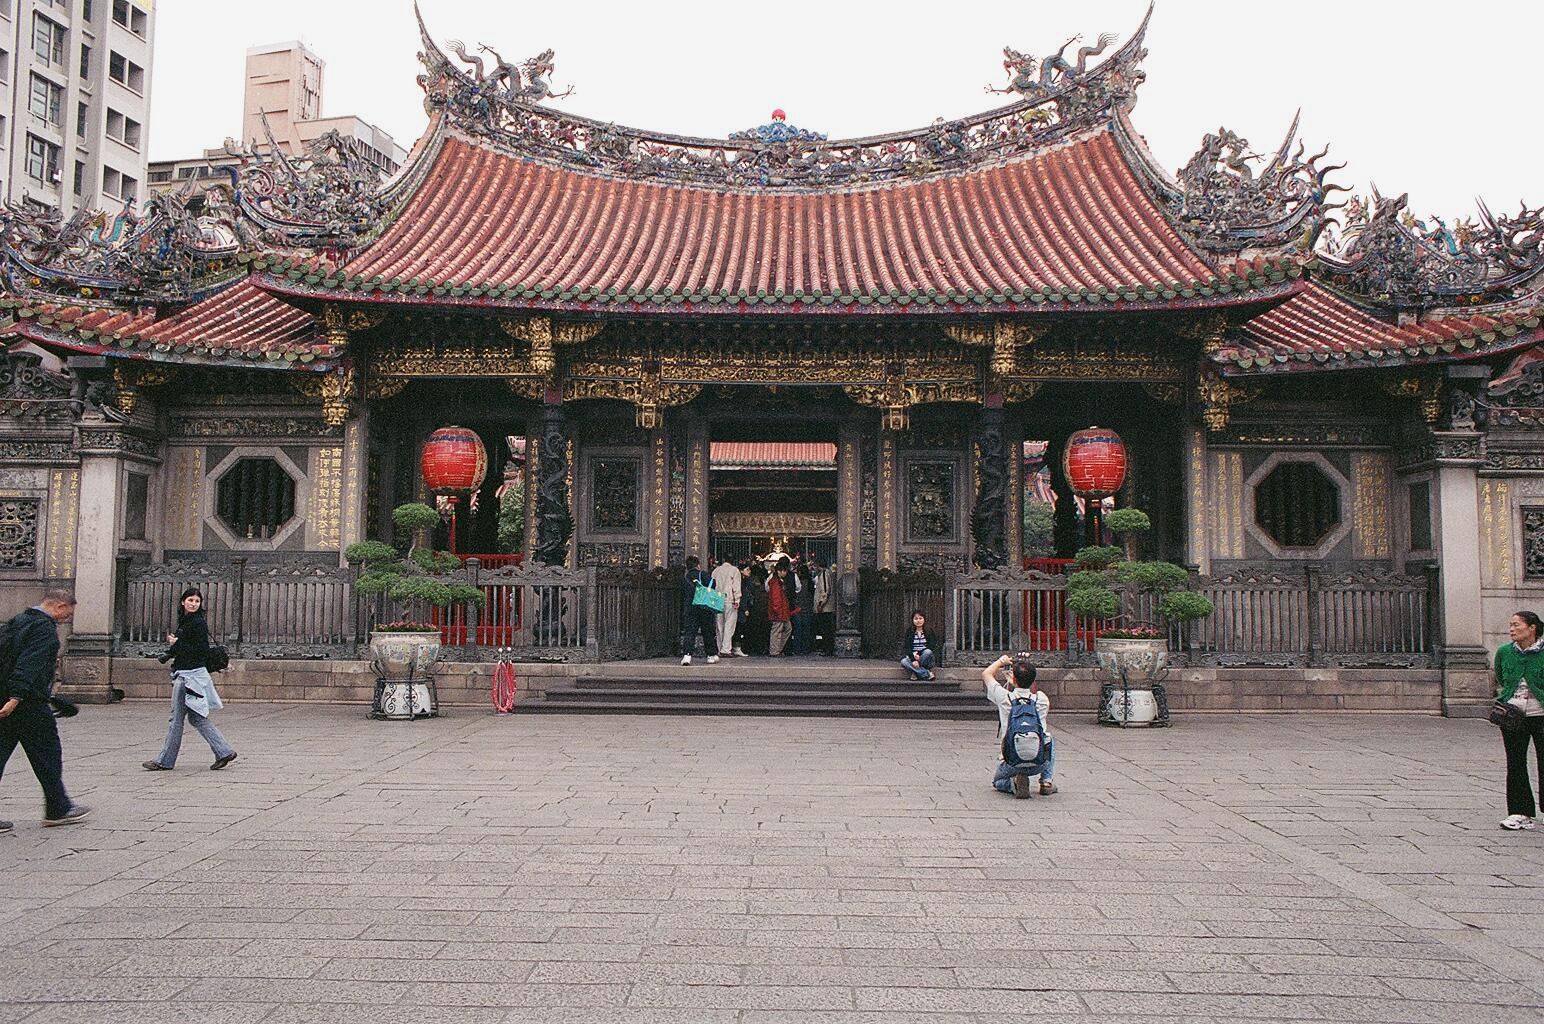 fotka / image nejstarsi chram v Taipei, Taipei, Taiwan